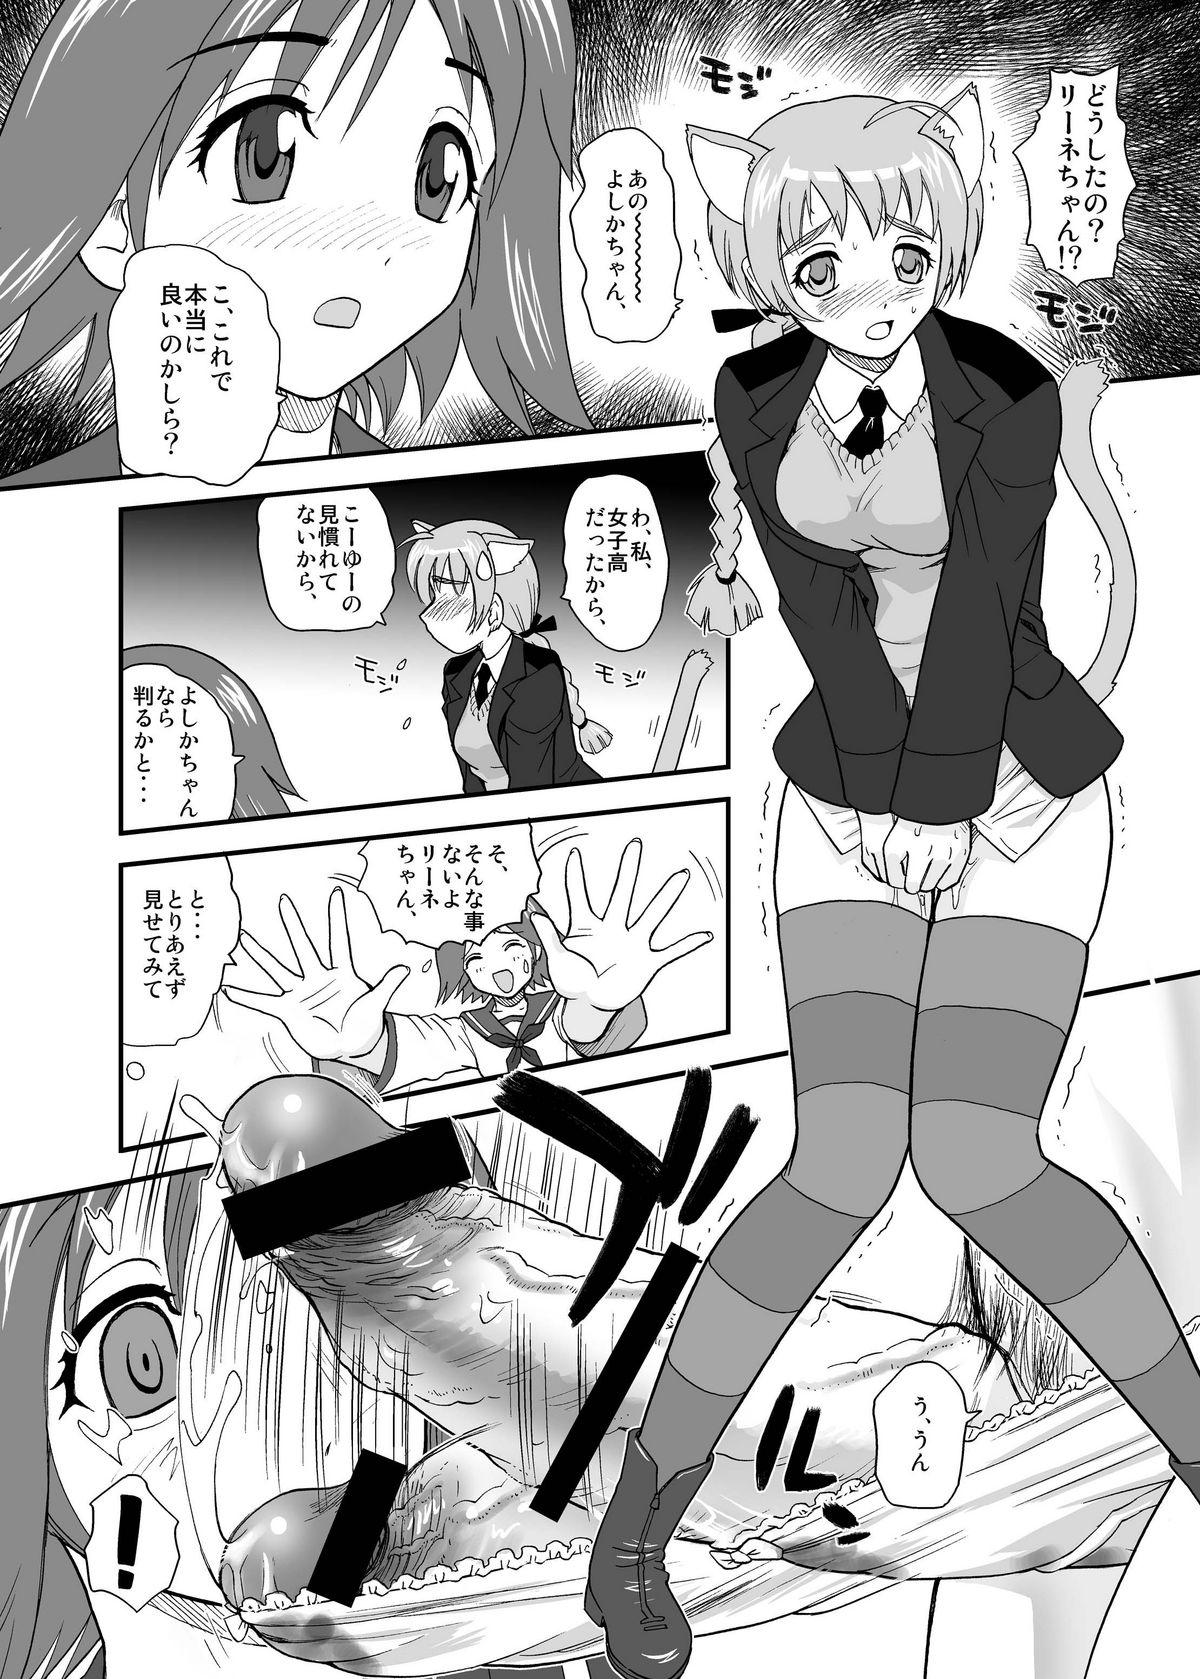 Gritona Chin ★ ja Naikara Hazukashiku Naimon!!! - Strike witches Big Dicks - Page 8